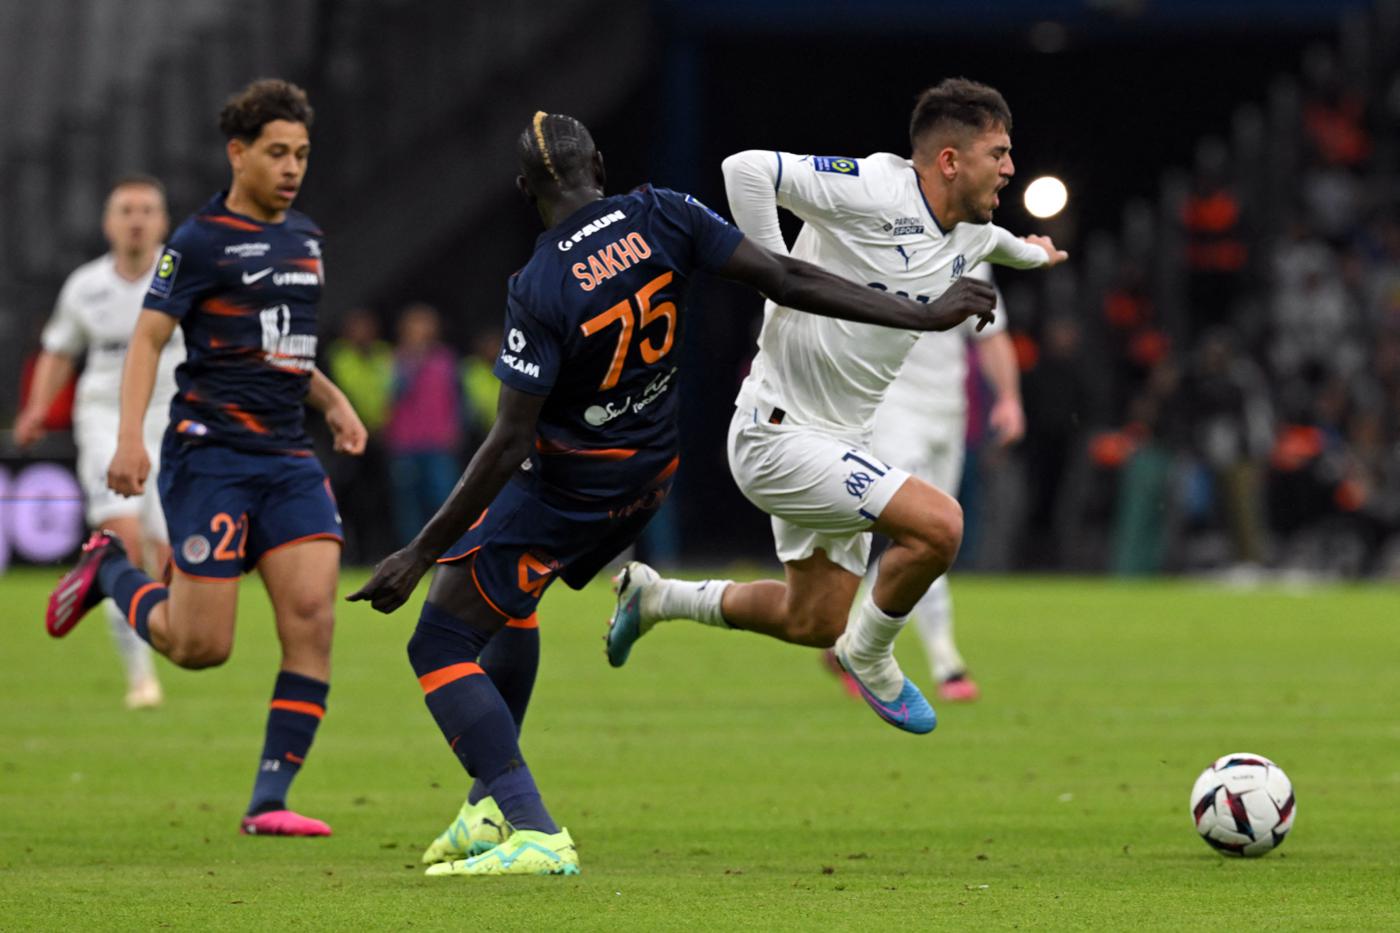 Marseille - Montpellier - 1:1. Französische Meisterschaft, 29. Runde. Spielbericht, Statistiken